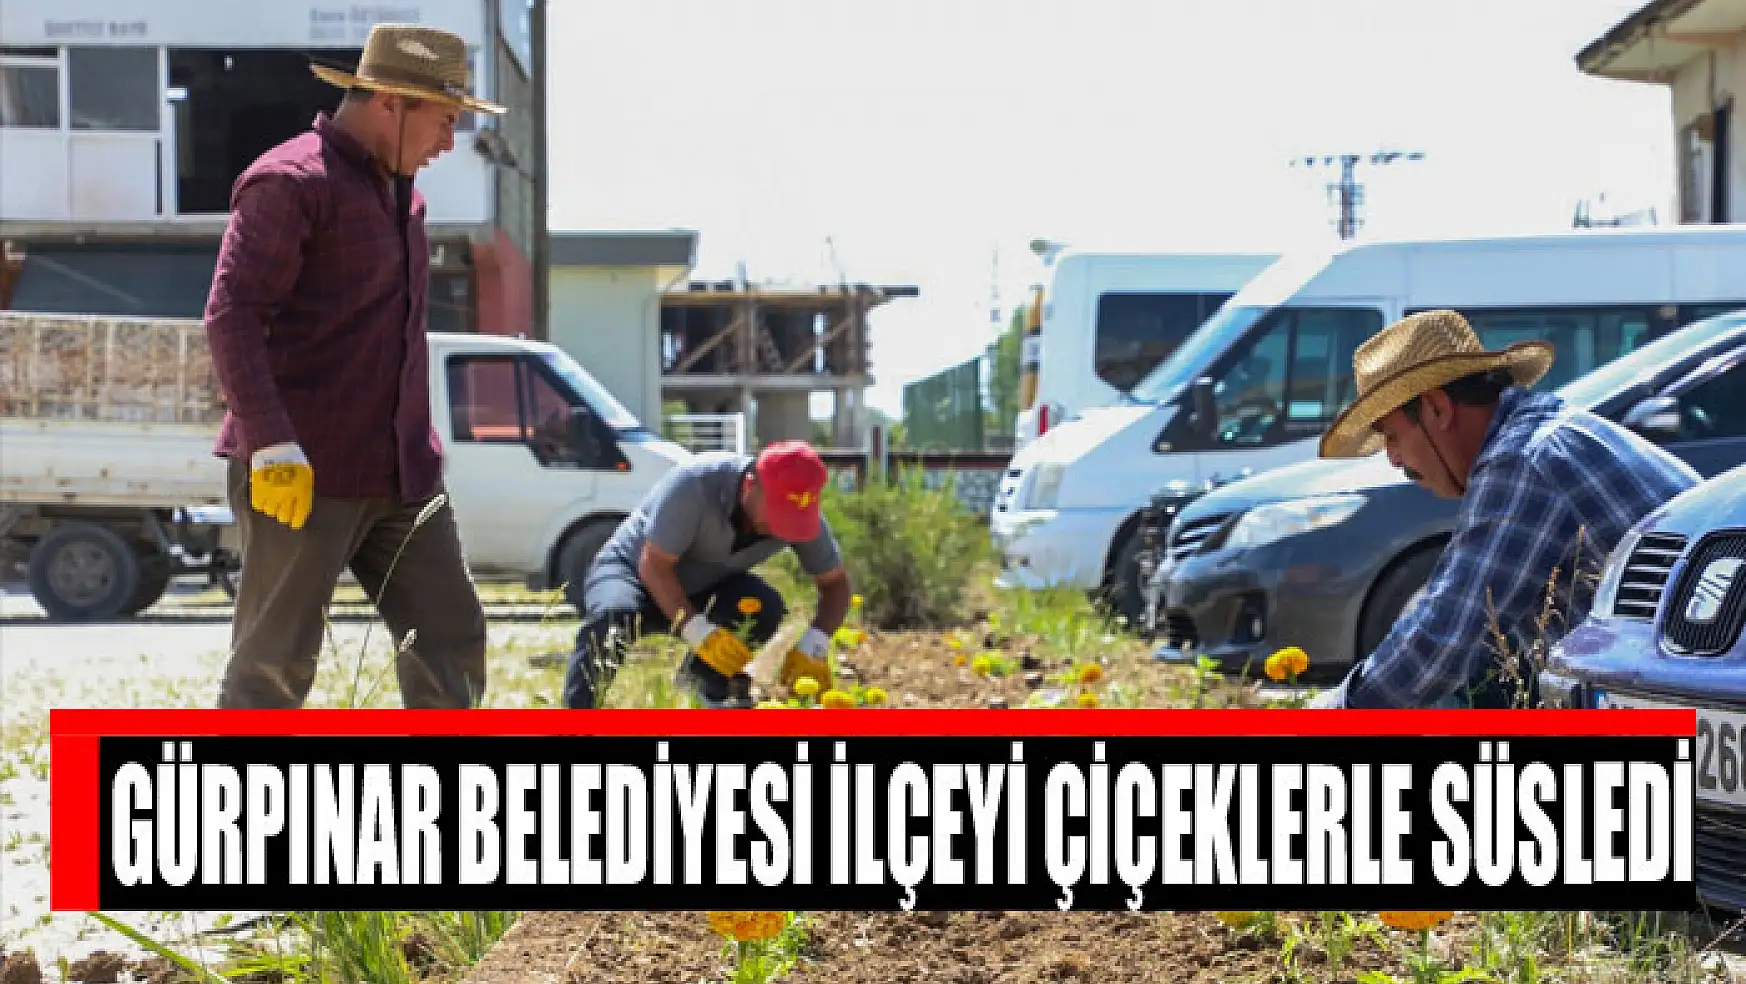 Gürpınar Belediyesi İlçeyi Çiçeklerle Süsledi